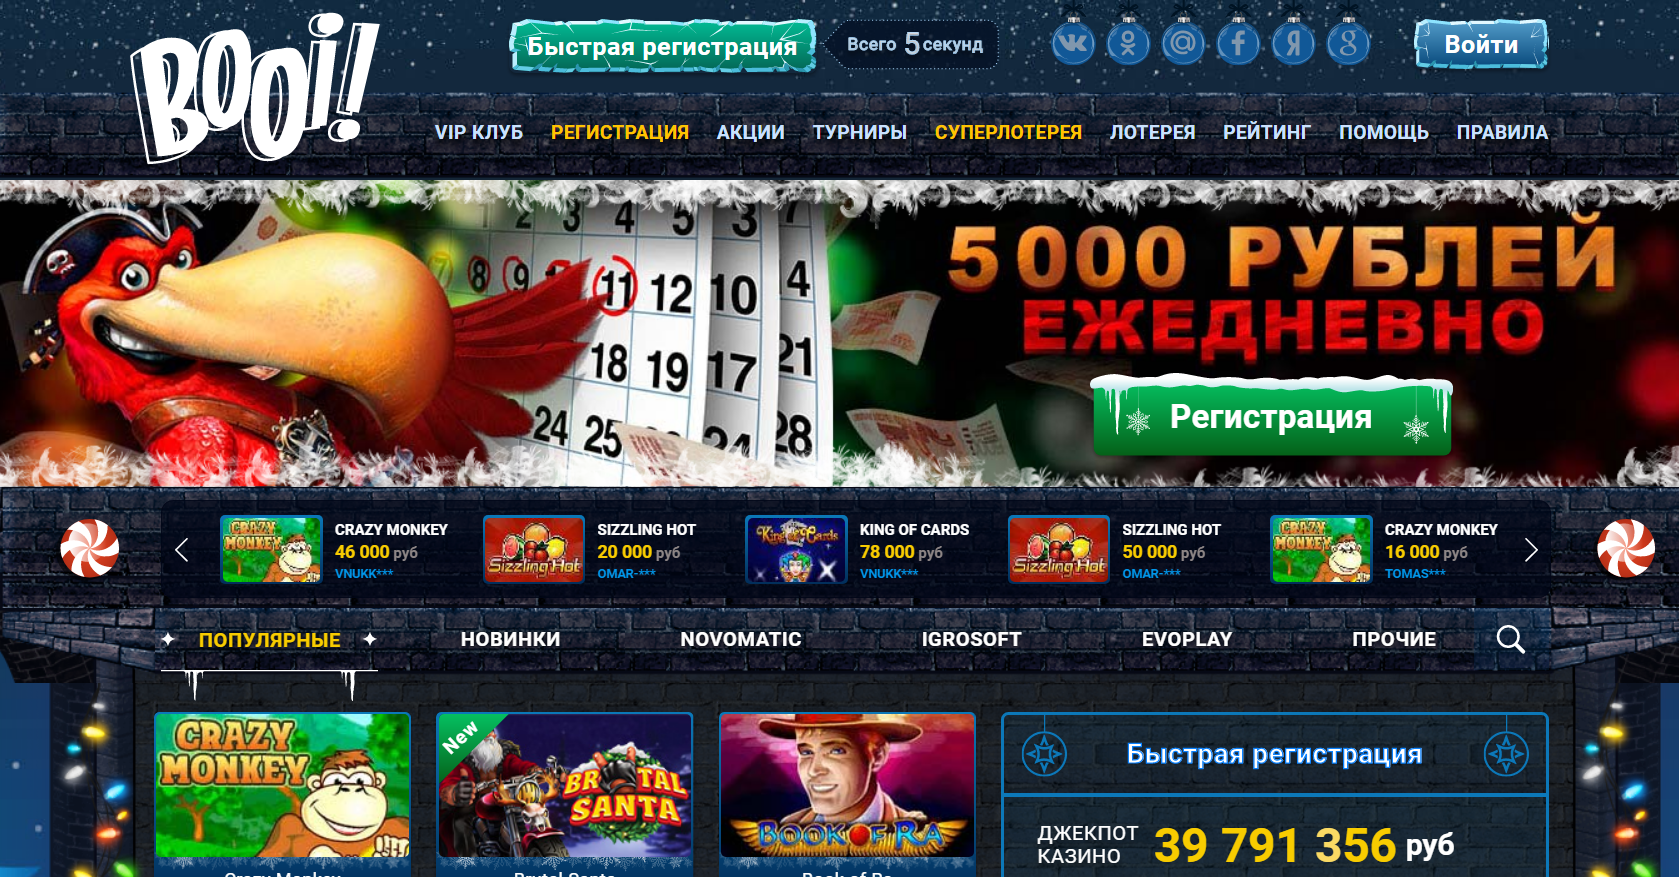 Booi casino eldorado casino 24 com как игровые автоматы максбет онлайн рейтинг слотов рф